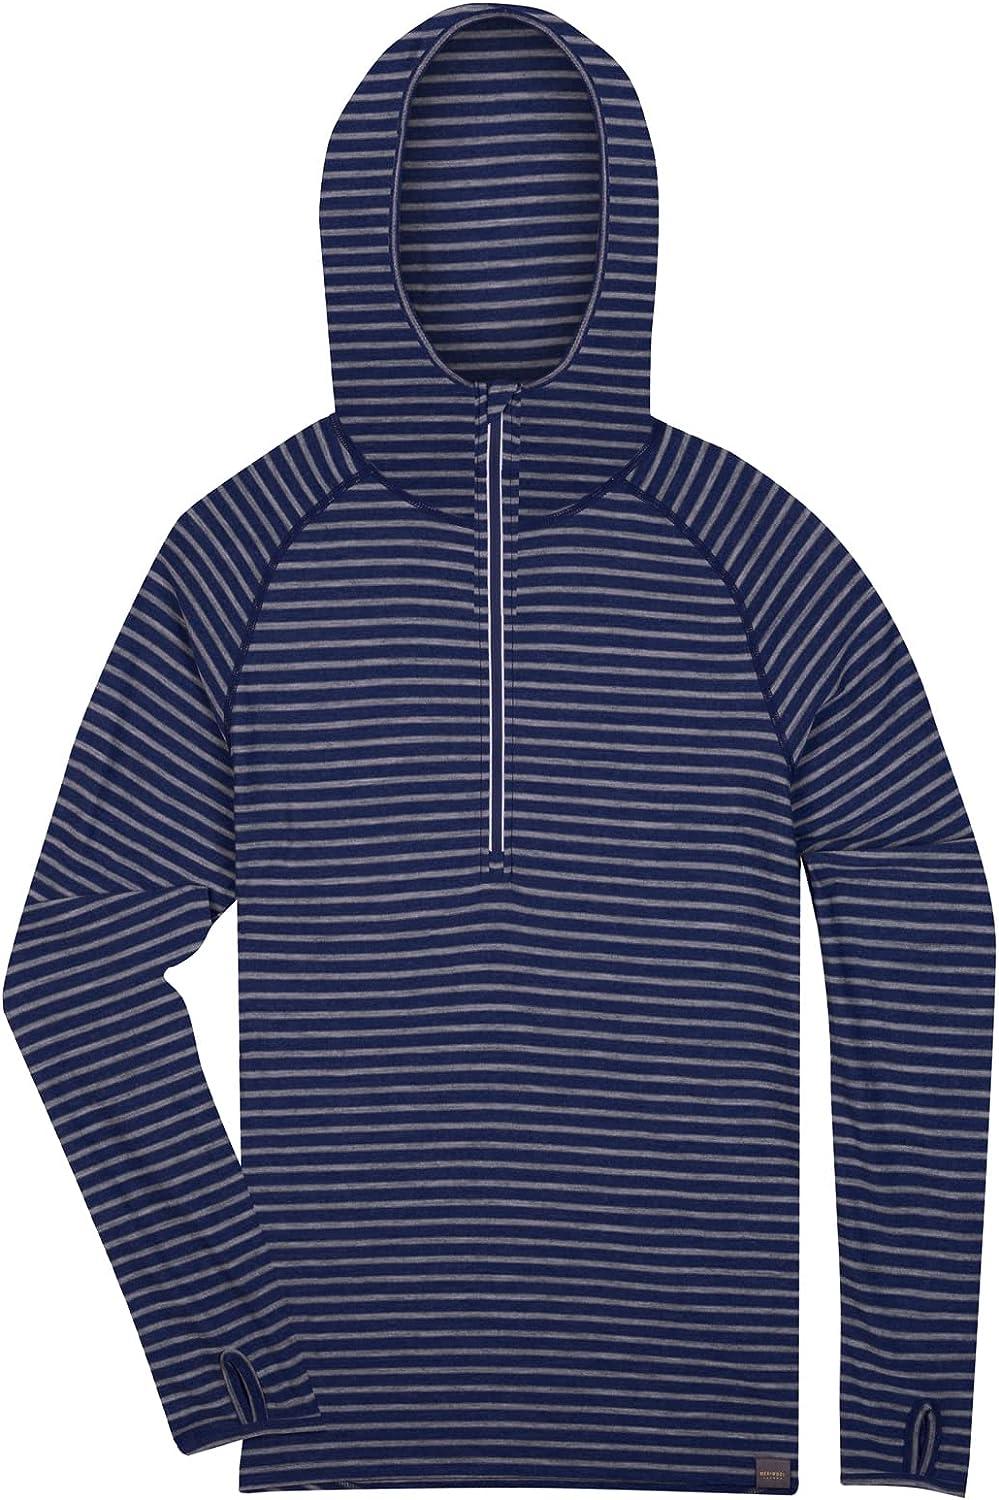 MERIWOOL Mens Base Layer Hoodie Lightweight Merino Wool Long Sleeve Thermal  Blue Sea Stripe X-Large